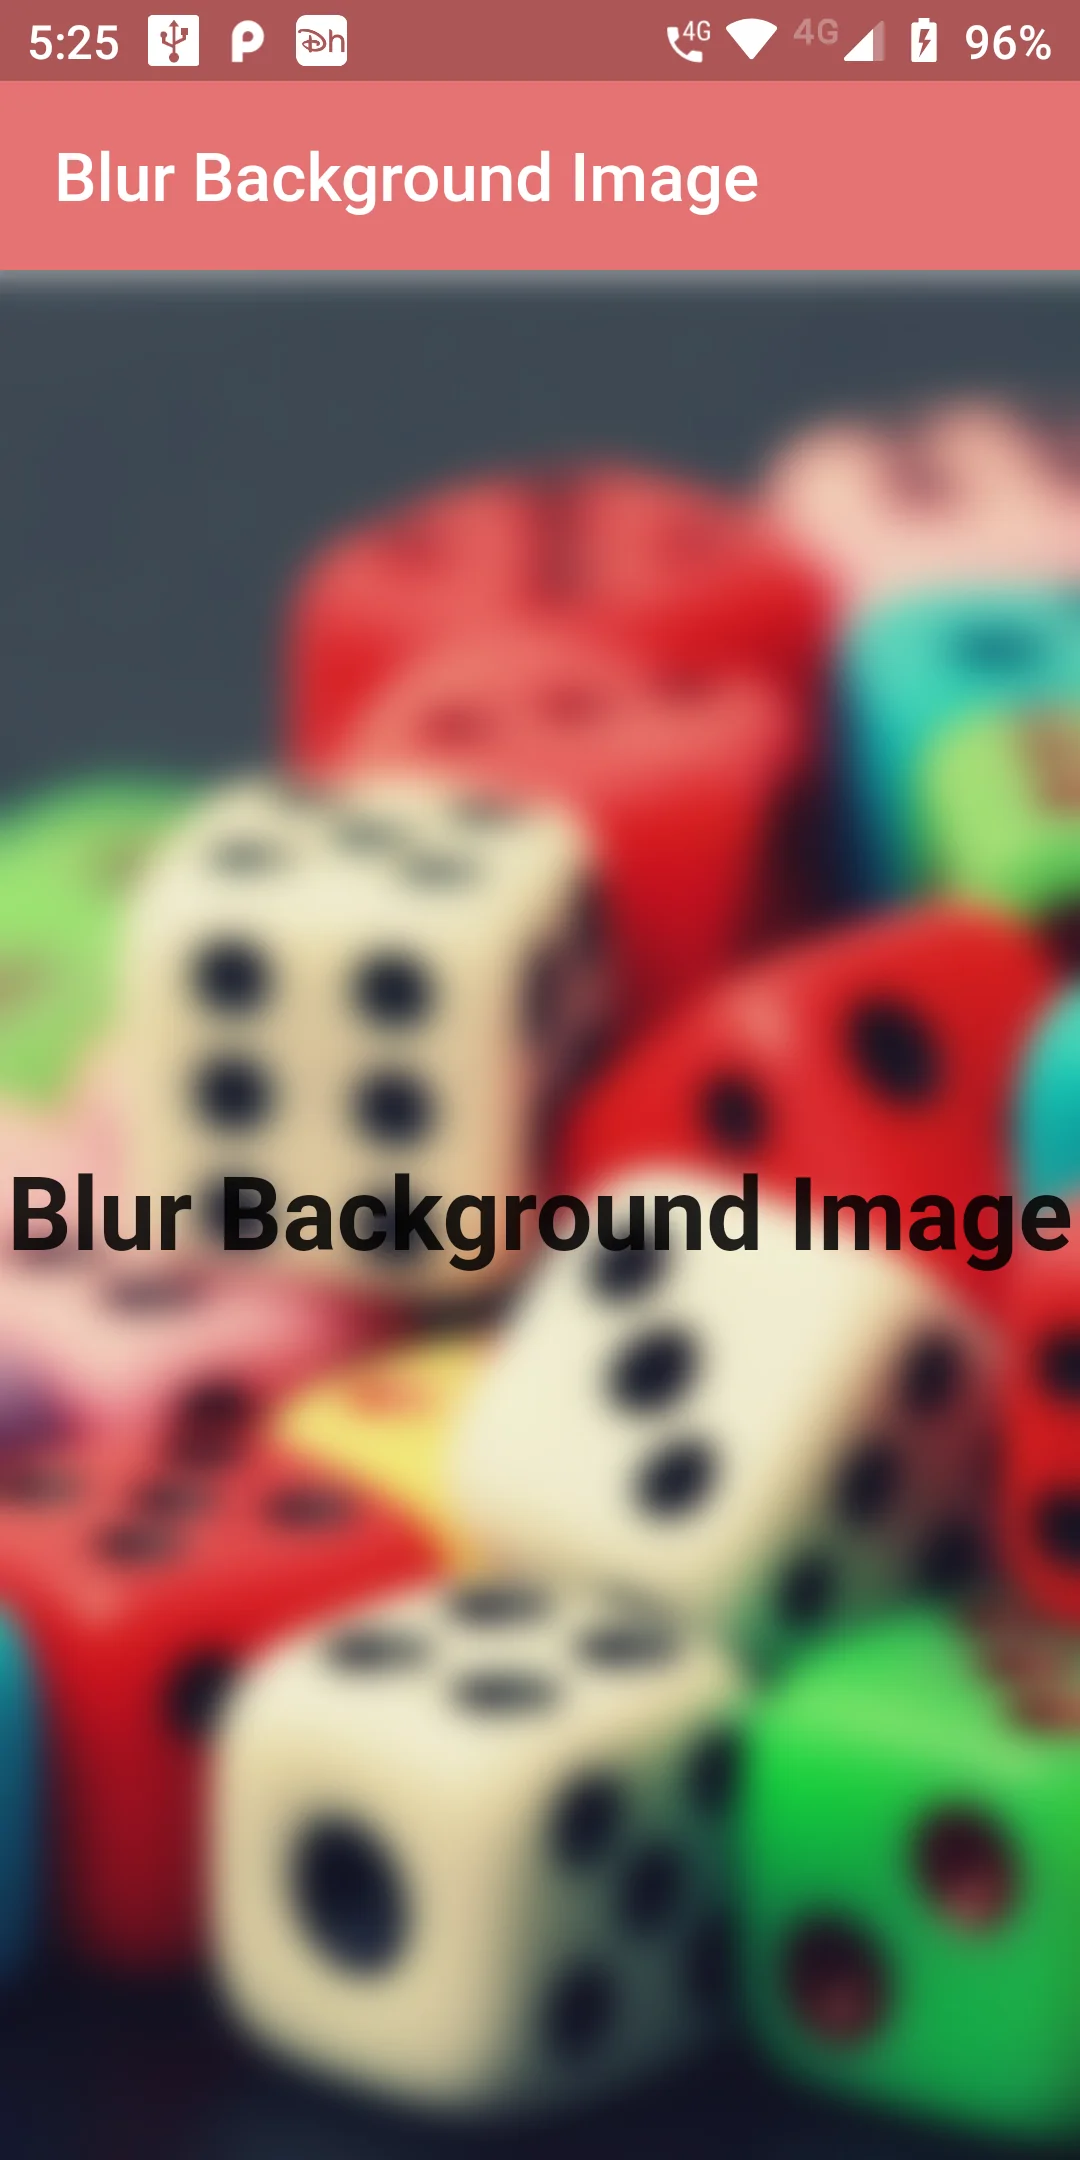 Blur Effect On Background Image Using Backdrop Filter In Flutter